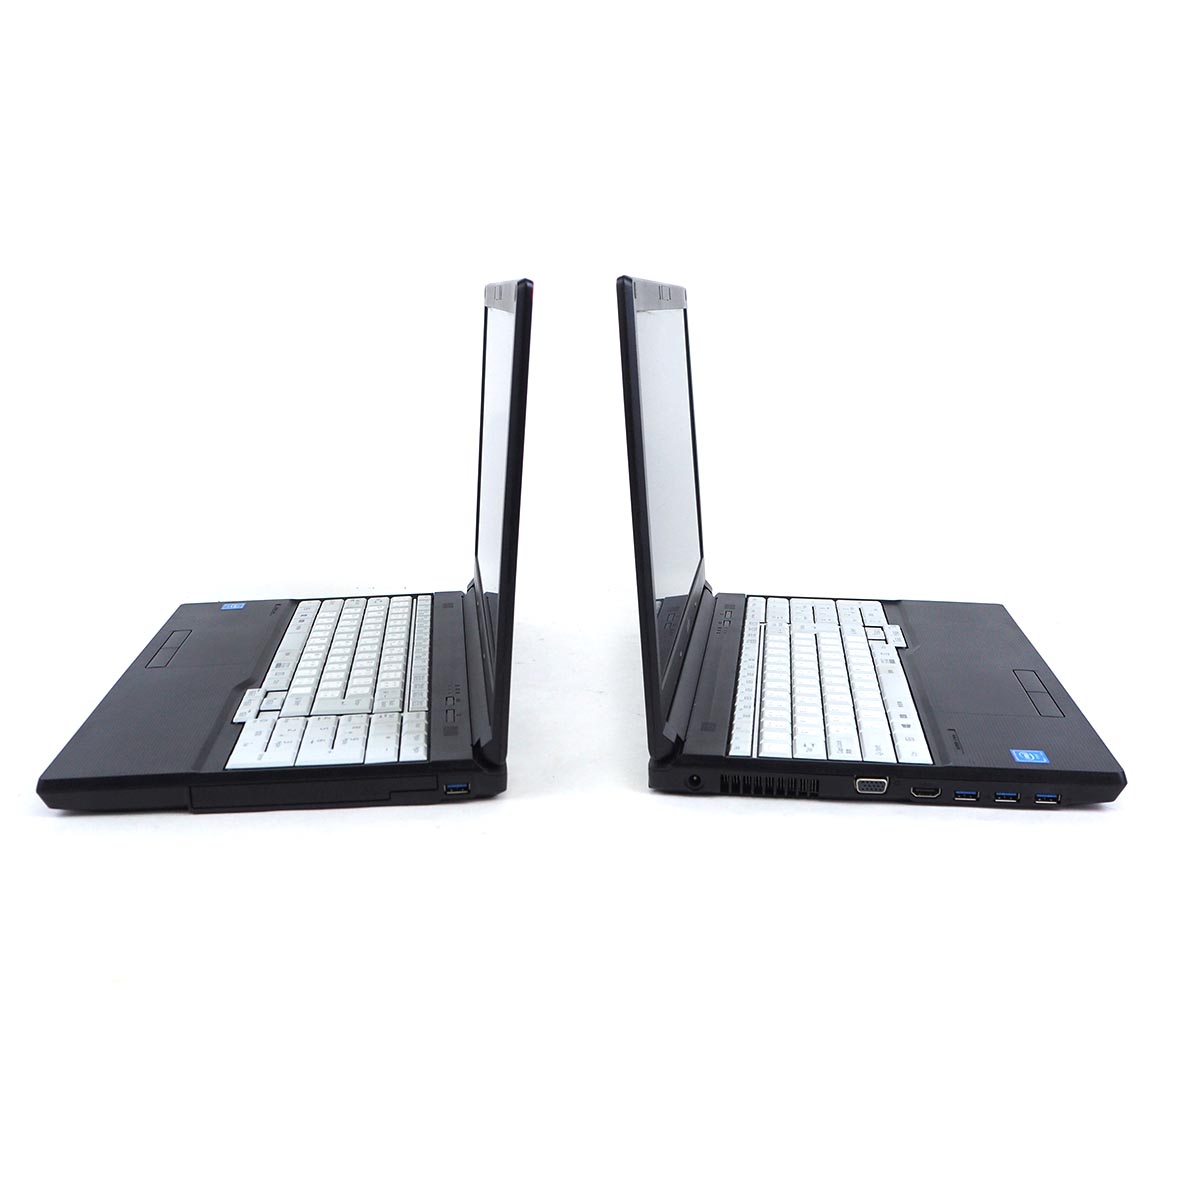 ข้อมูลเกี่ยวกับ โน๊ตบุ๊ค Fu LifeBook A577/R Celeron Gen7 / RAM 4-8GB (DDR4) HDD/SSD หน้าจอ 15.6 นิ้ว คีย์แยก Wifi-Blth ในตัว Refhed laptop used notebook คอมพิวเตอร์ 2022 มีประกัน By Totalsol